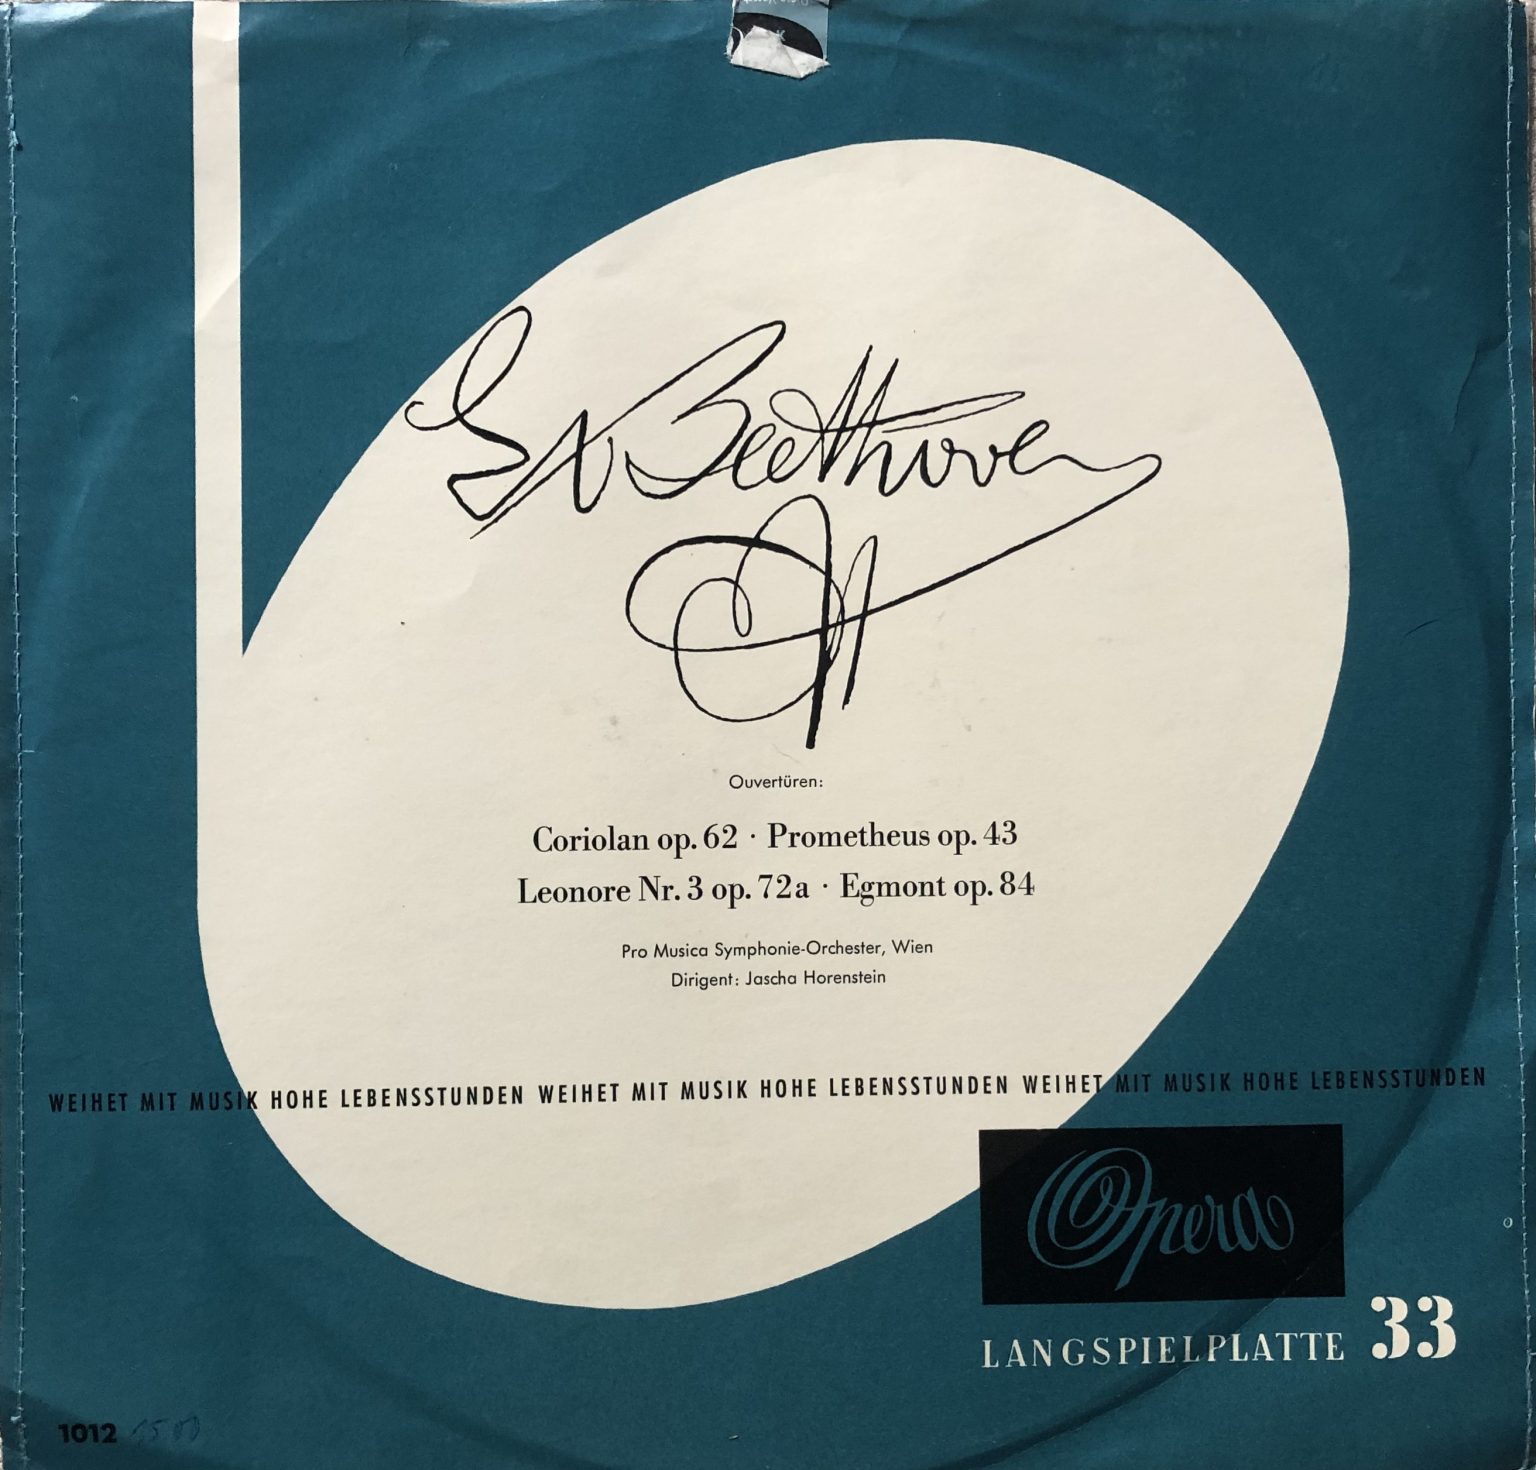 Ludwig van Beethoven, Jascha Horenstein, Pro Musica Symphonie Orchester, Wien* – Ouvertüren LP